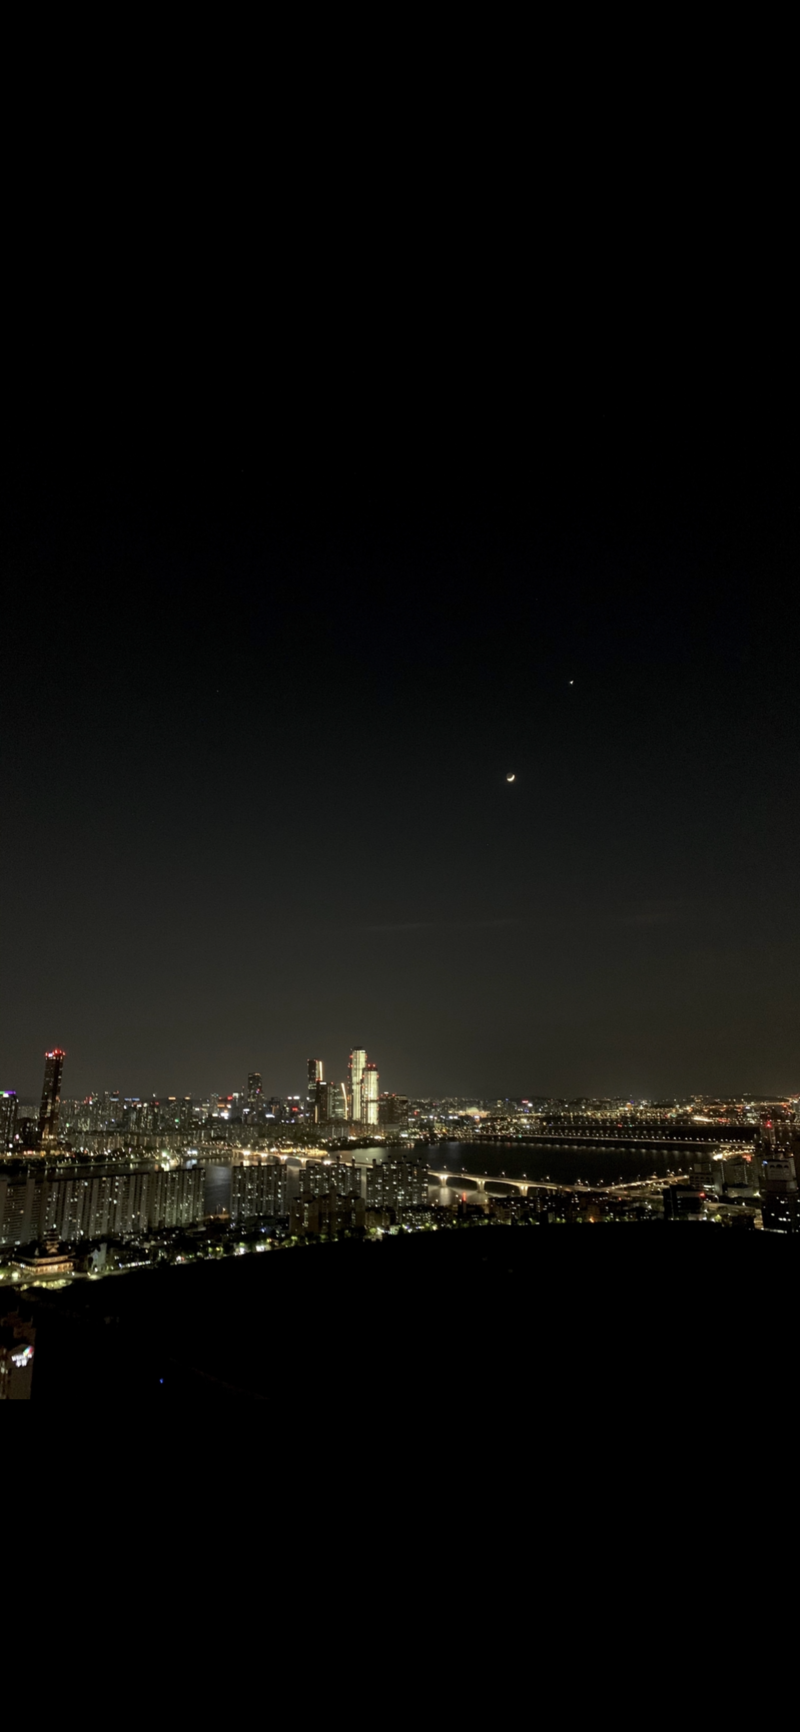 직찍) 서울 한강 야경 아이폰/맥북 배경화면 : 네이버 블로그